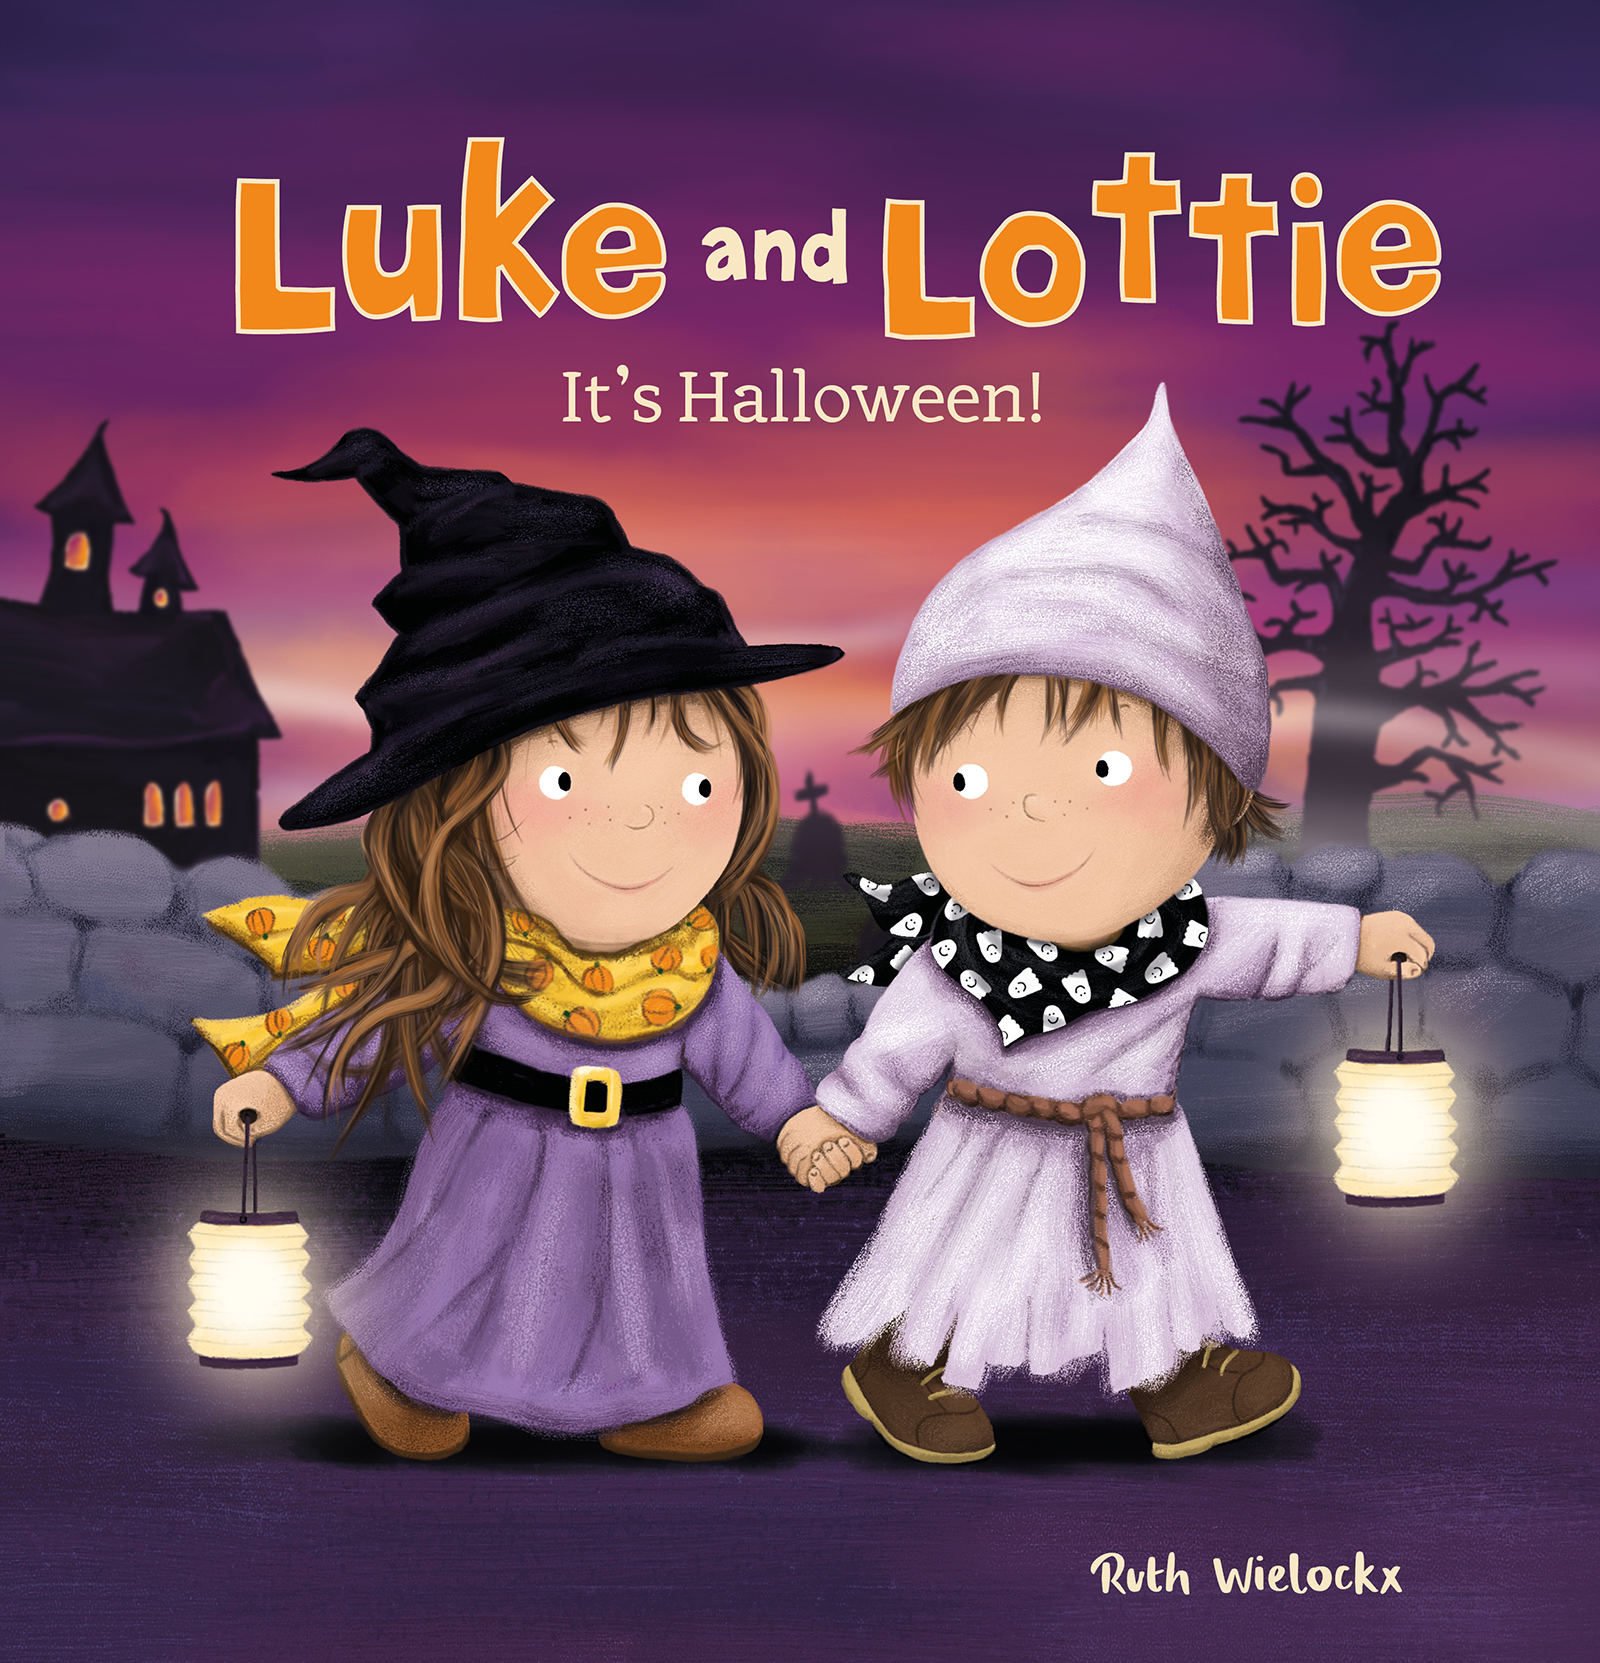 Luke and Lottie. It's Halloween! — Clavis Publishing | We Make